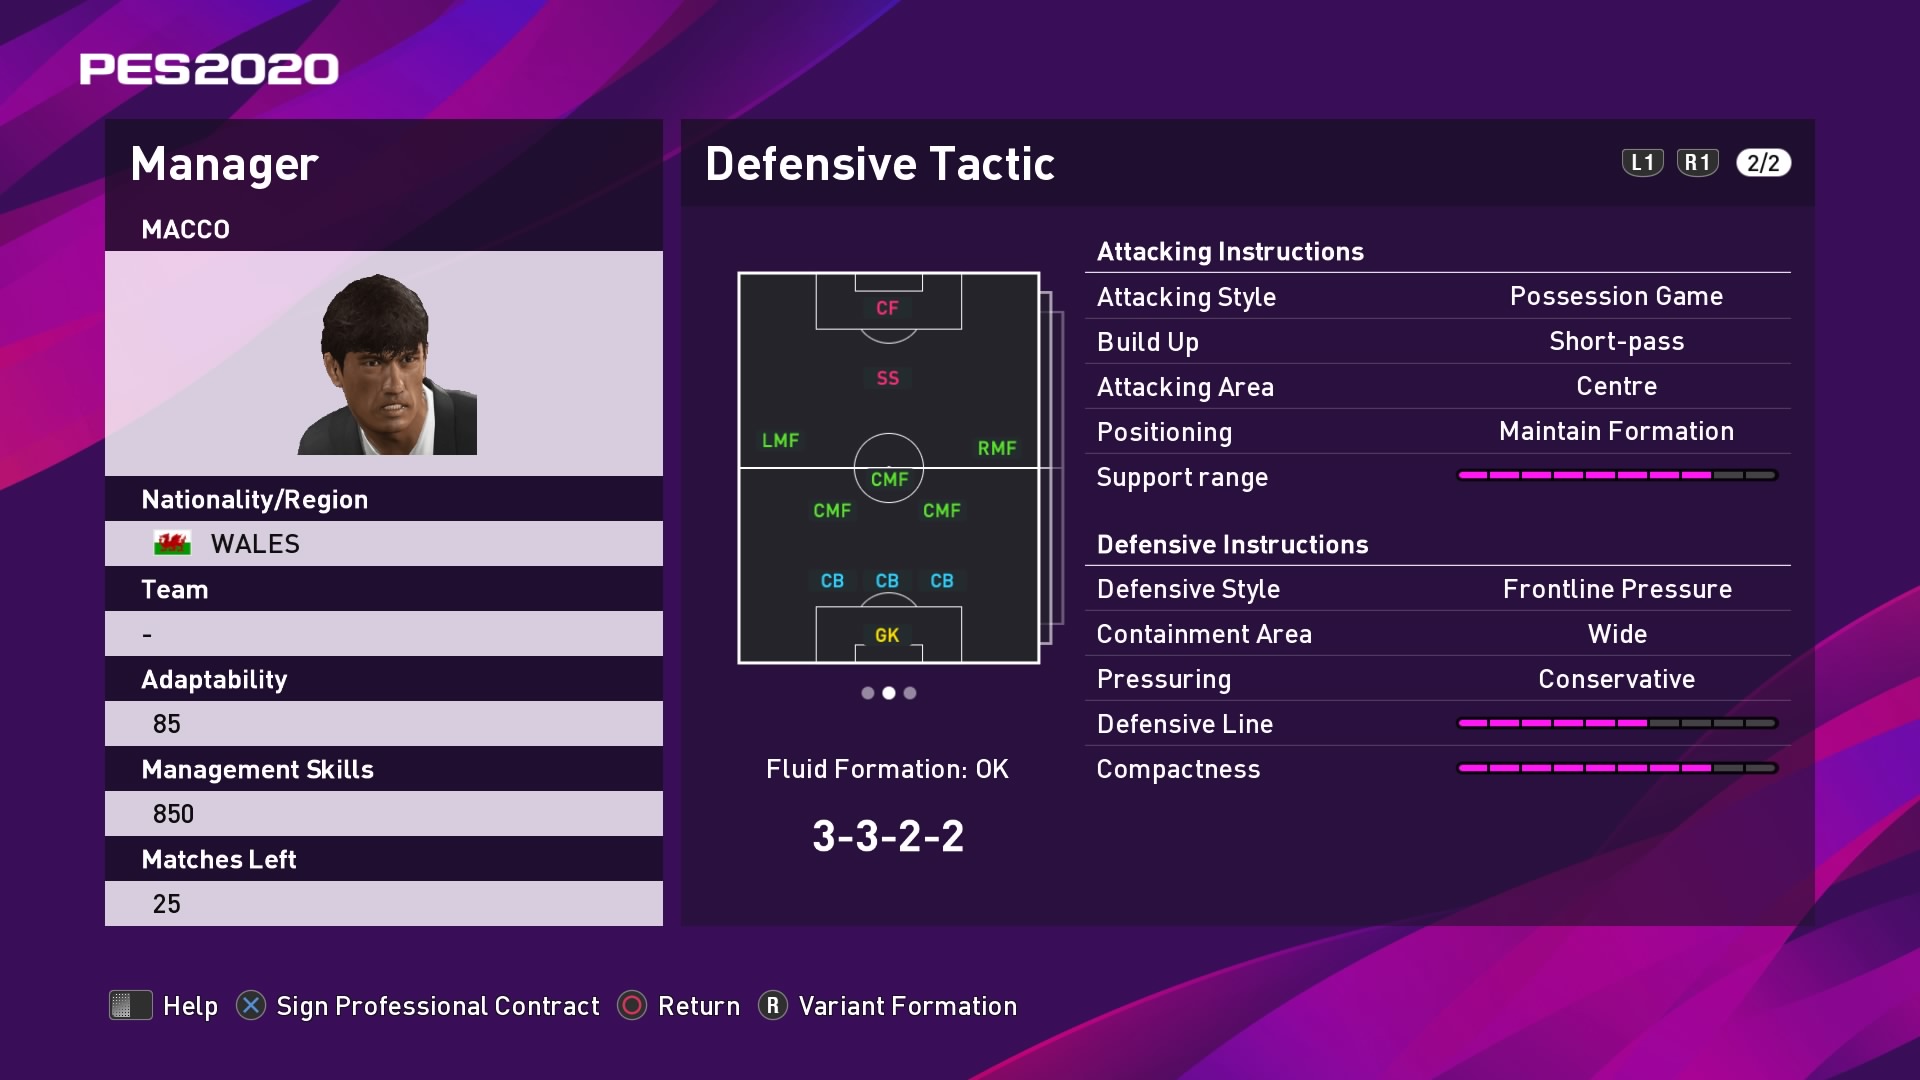 Macco Defensive Tactic when in possession